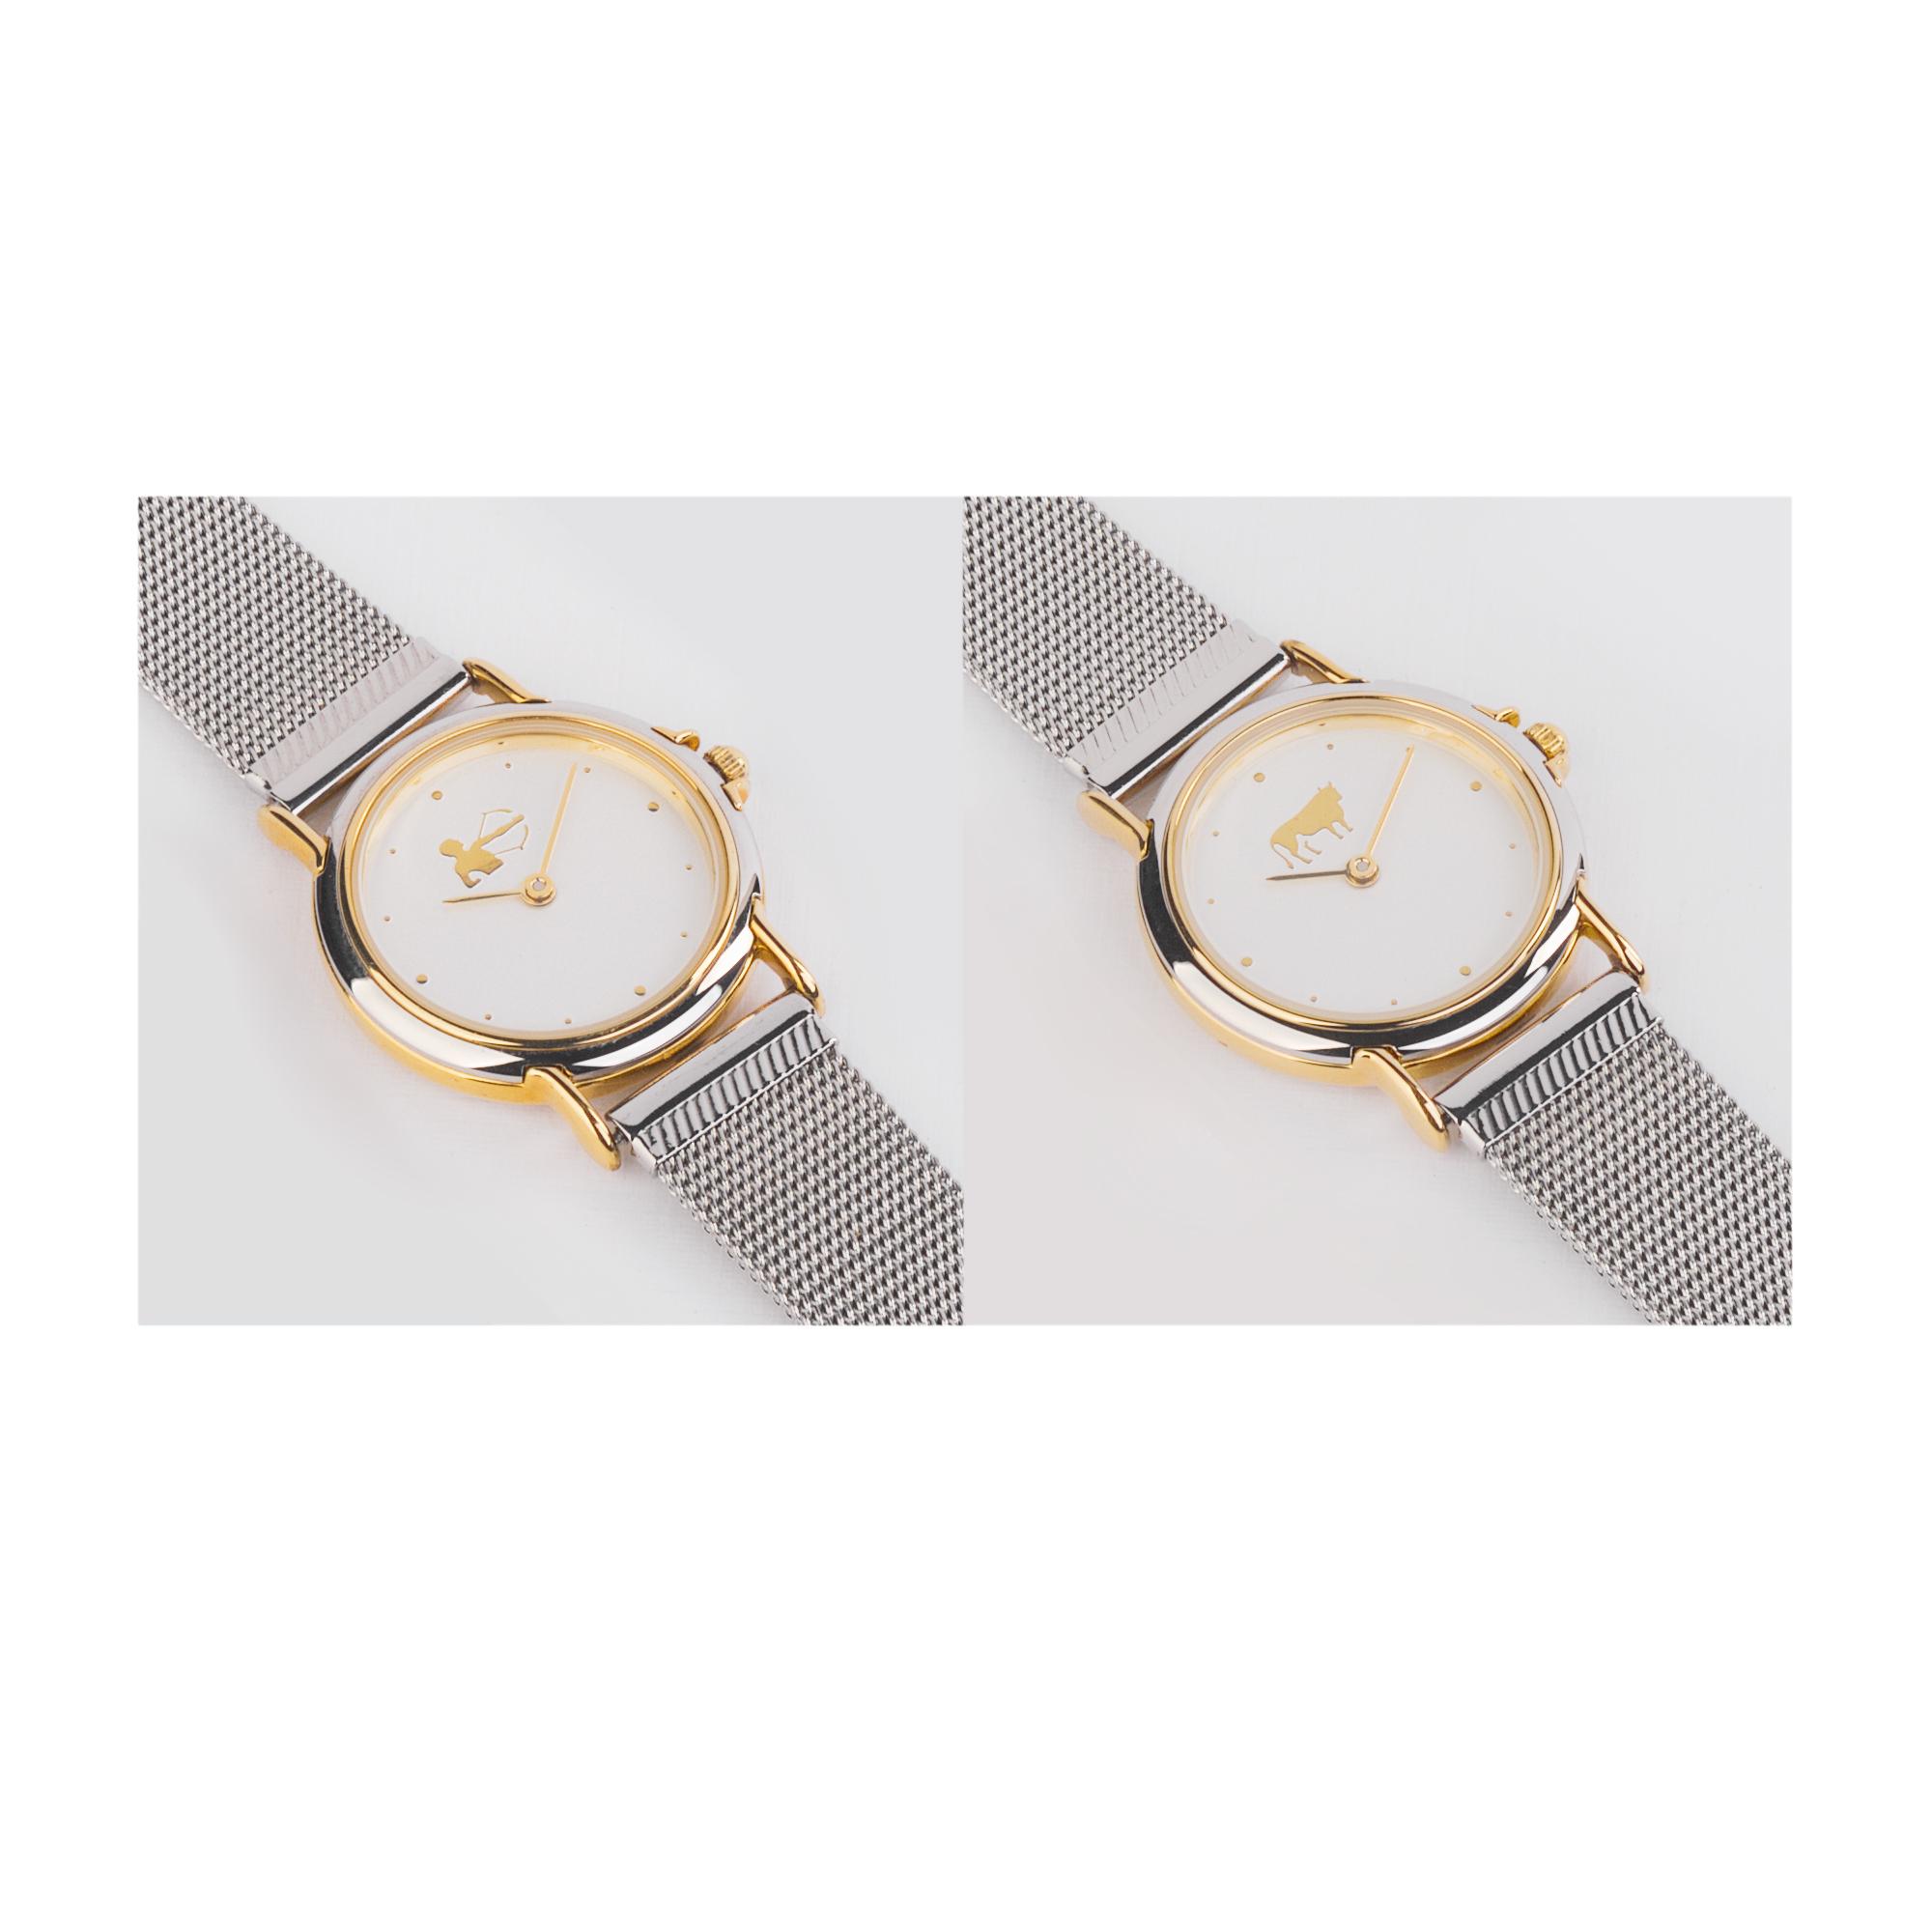 Часы наручные женские со знаком зодиака, арт. 2113-Z в каталоге “Океан бизнес сувениров” для оптовых заказов